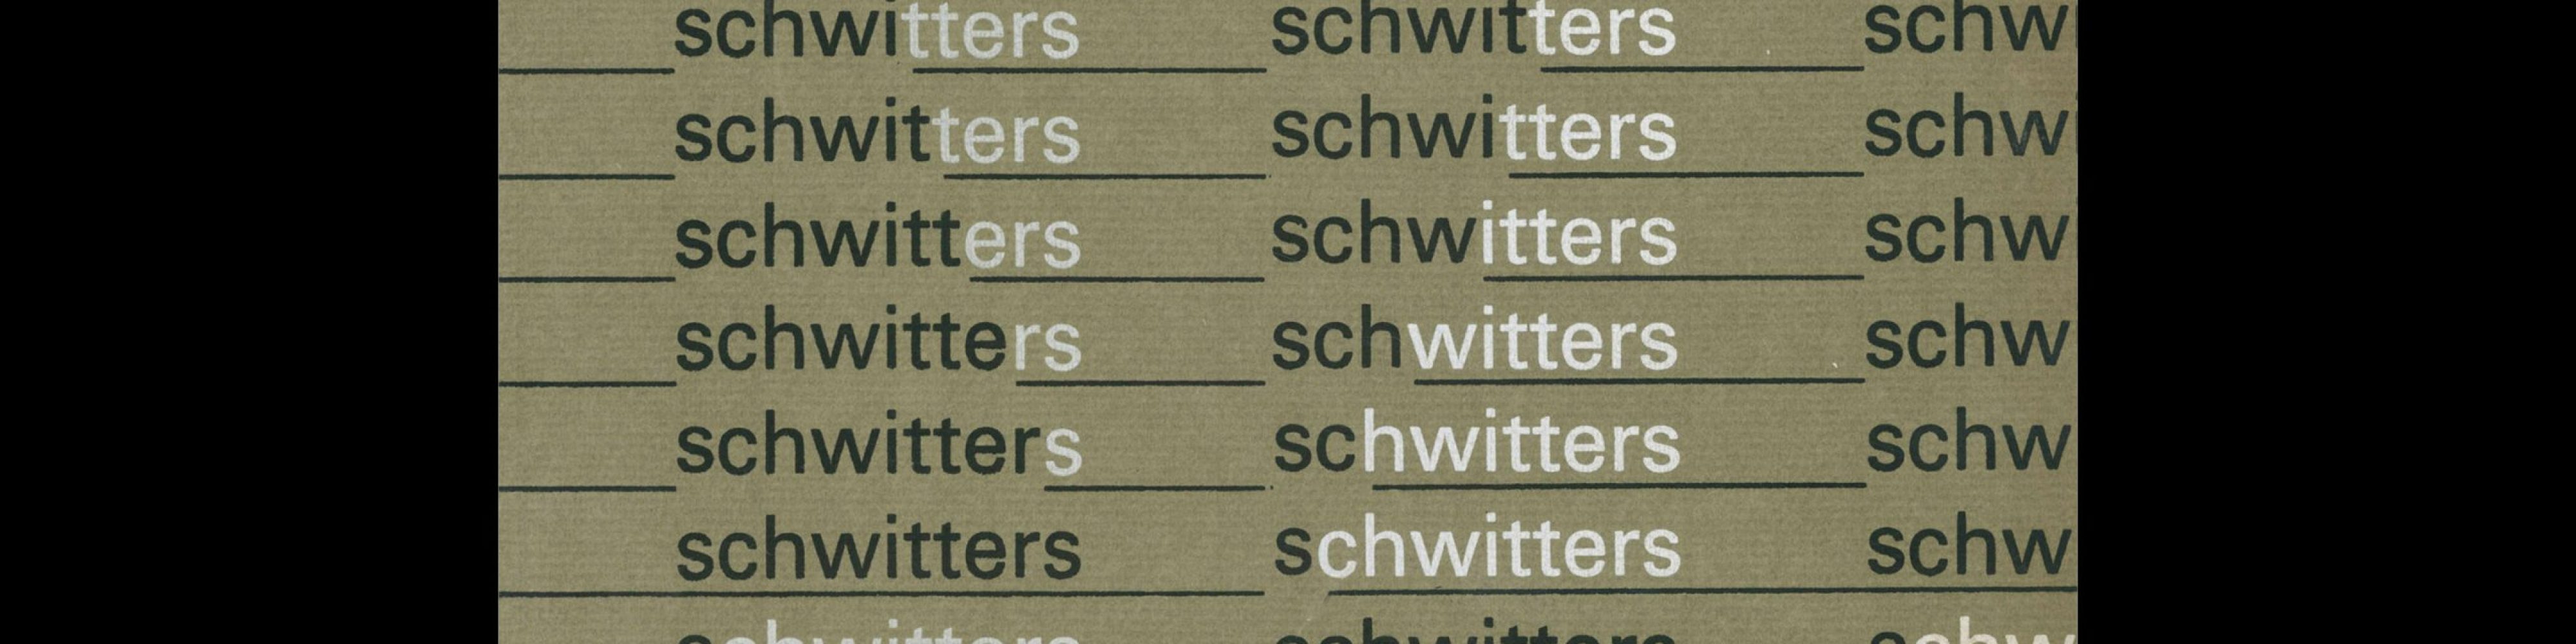 Kurt Schwitters, Stadtische Kunsthalle, Dusseldorf, 1971 Designed by Walter Breker